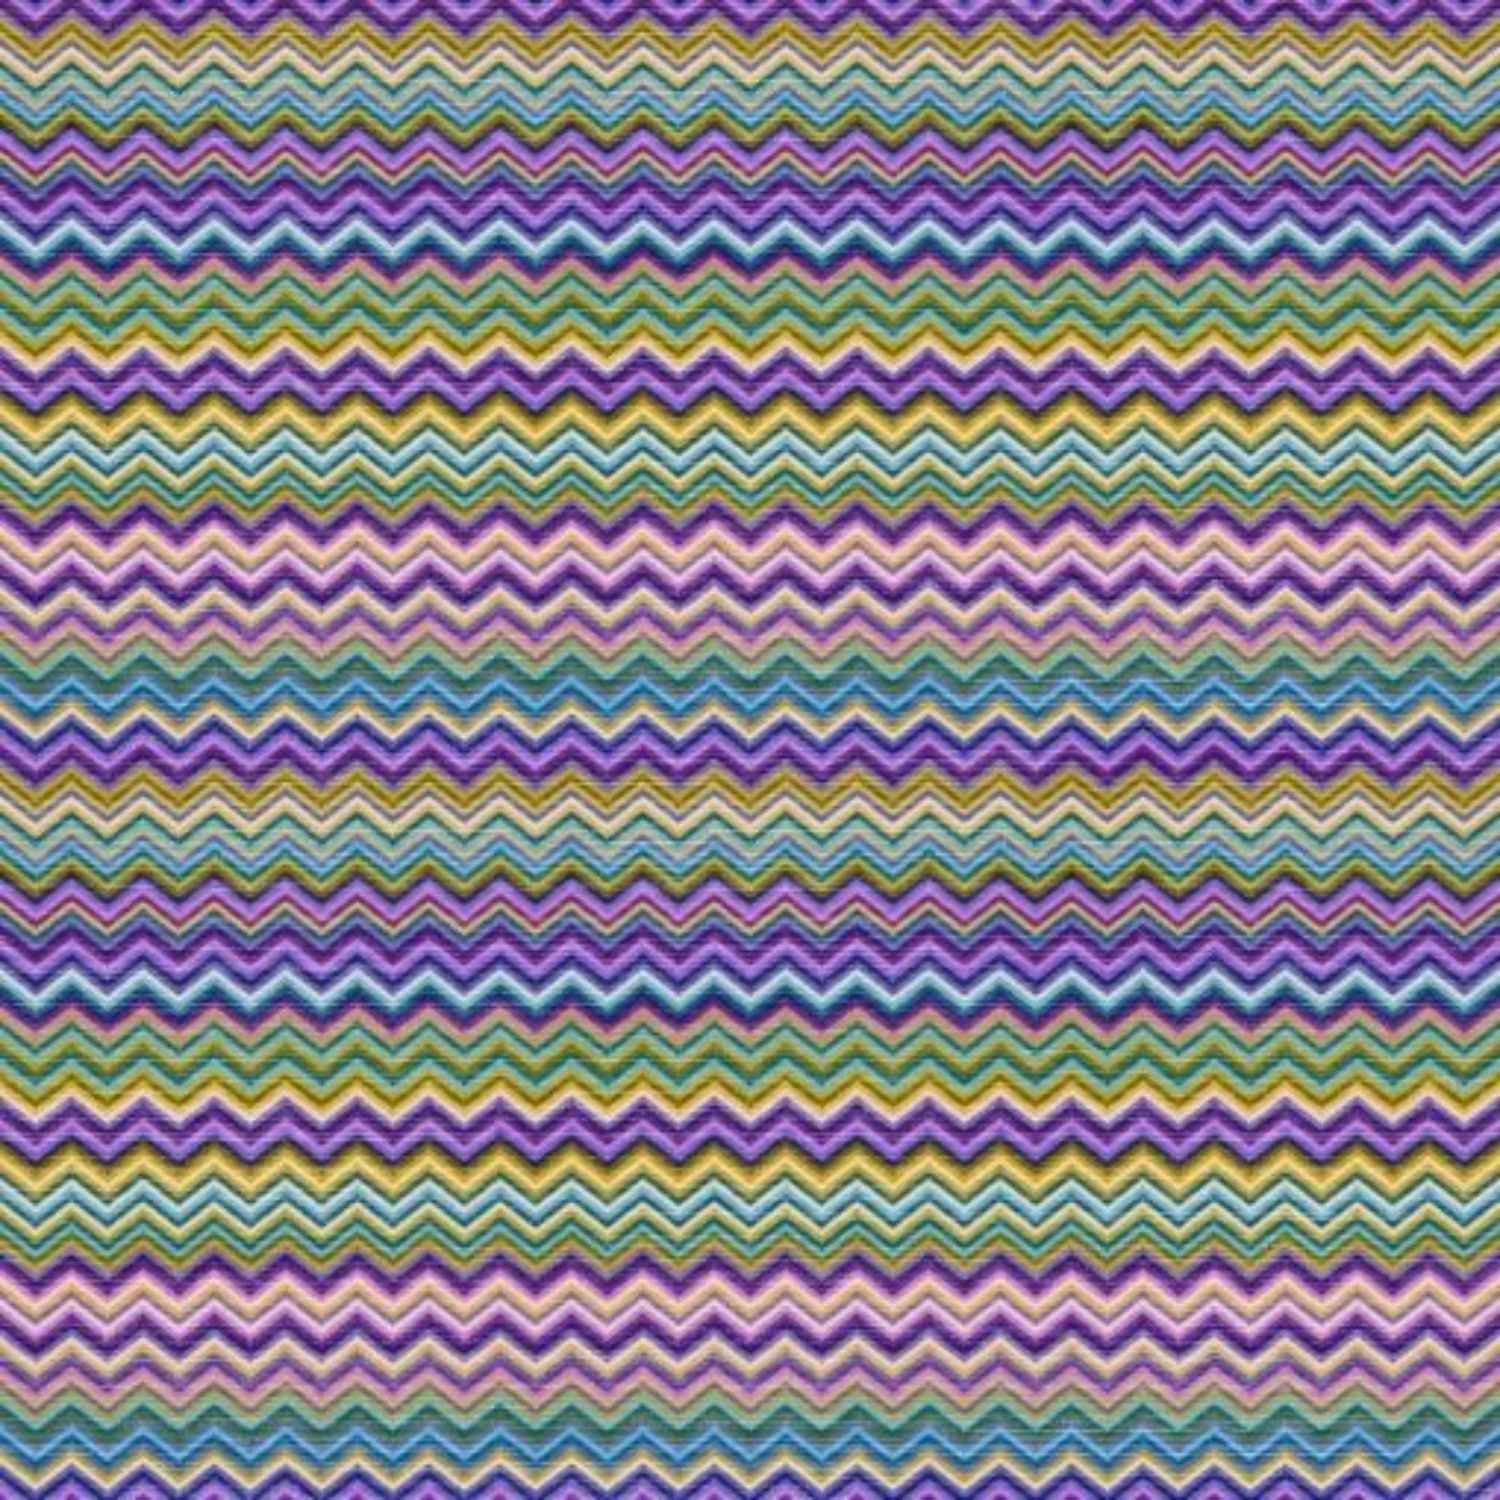 copritutto-telo-arredo-tuttofare-baia-lilla-geometrico-viola-giallo-verde-azzurro-multicolor-zig-zag-chevron-pattern